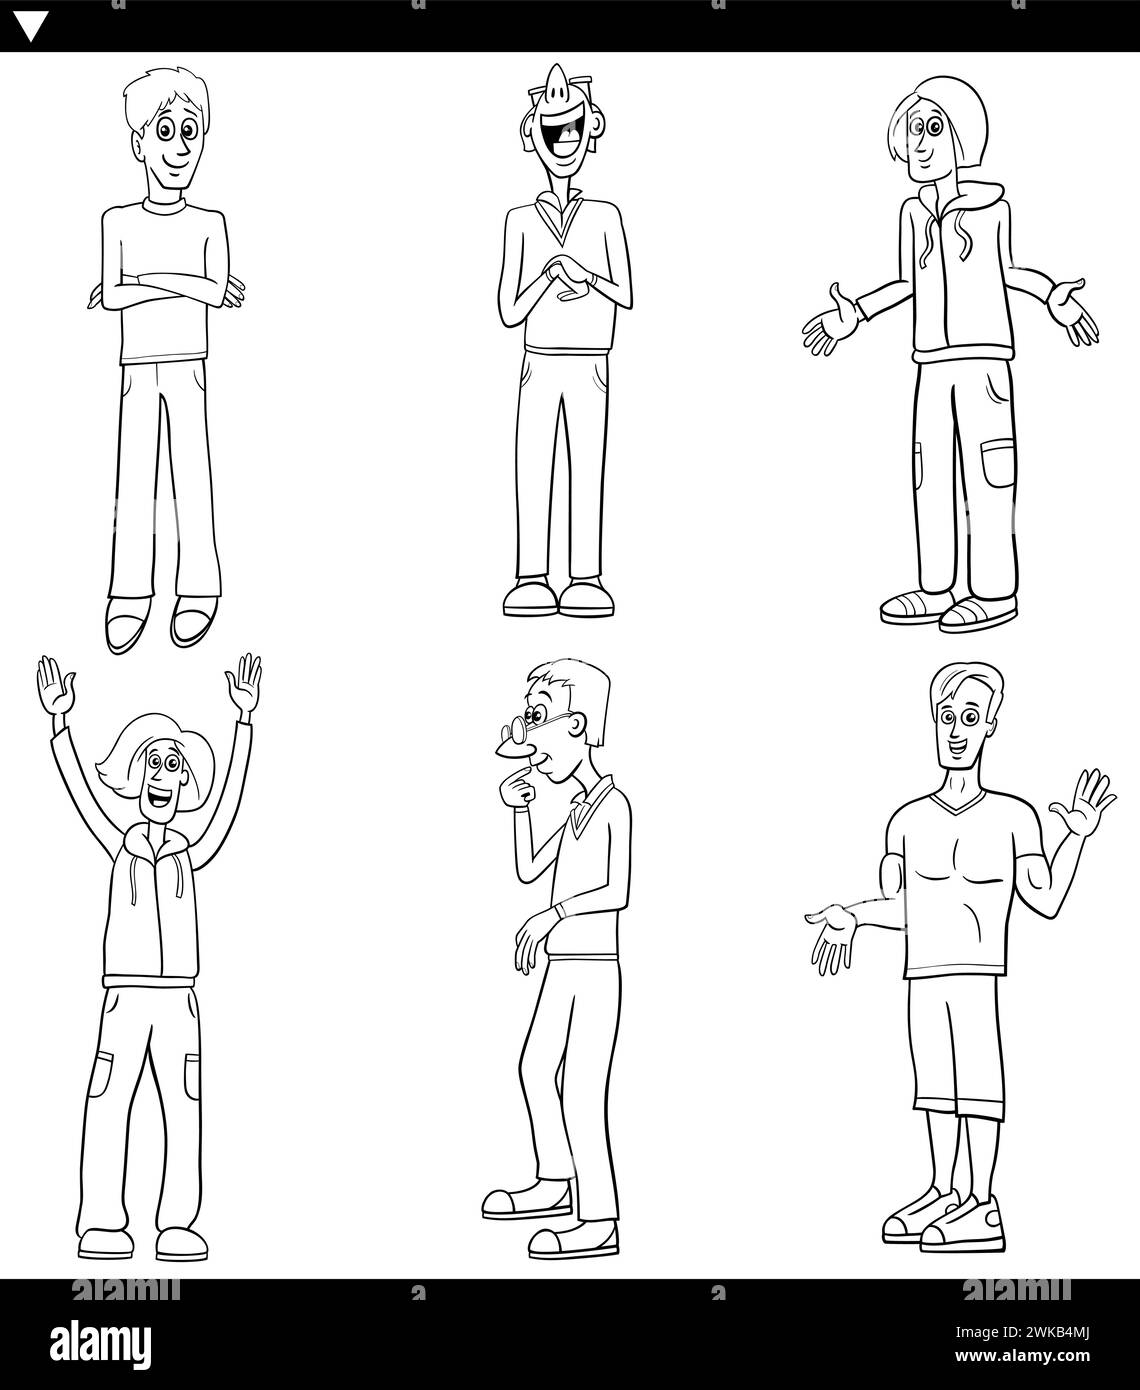 Illustration de dessin animé de personnages comiques drôles de jeunes hommes Set coloriage Illustration de Vecteur